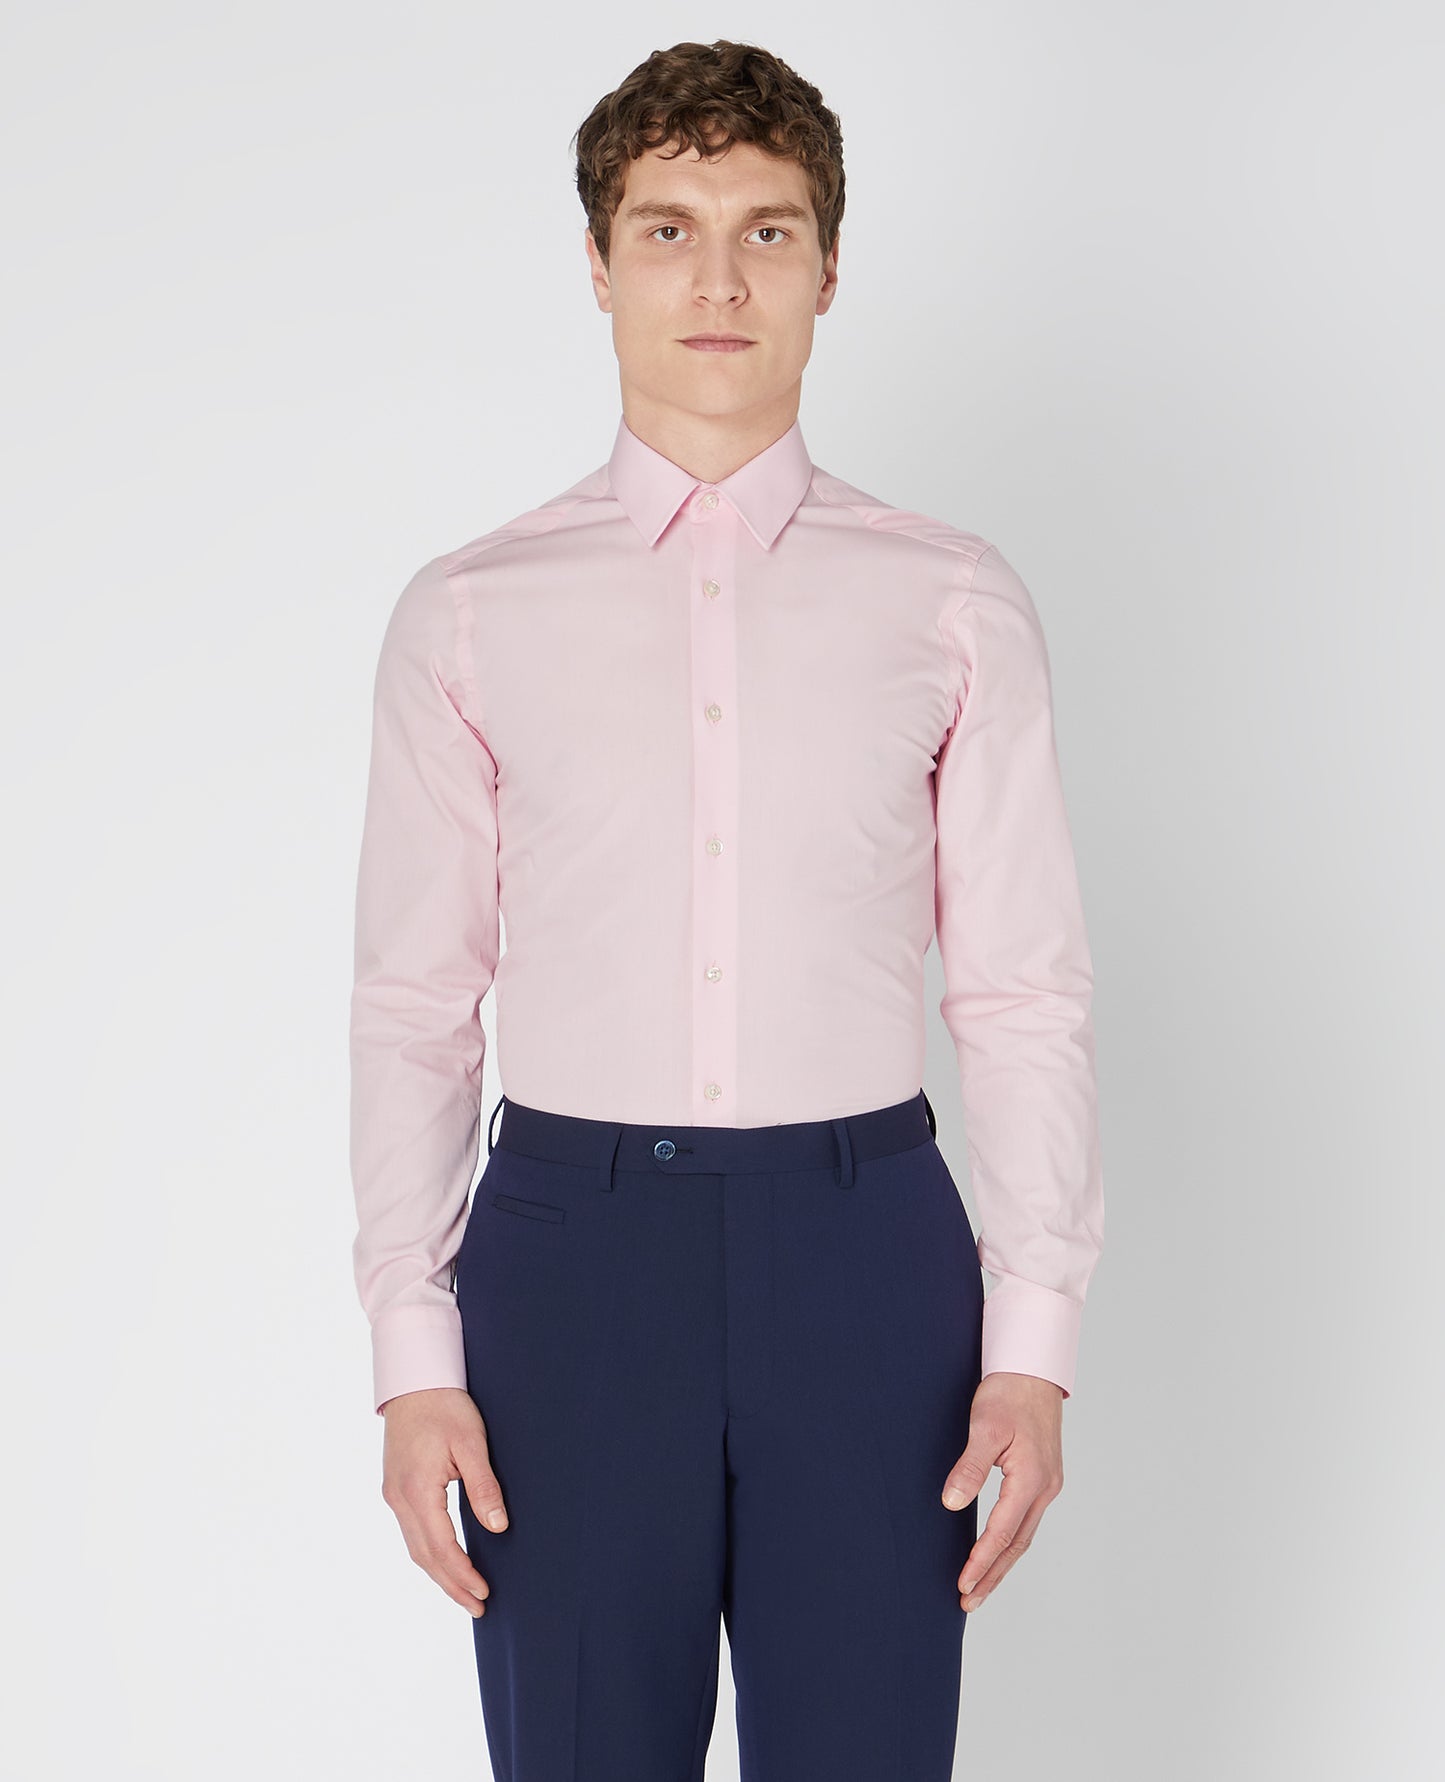 Remus Uomo 18600 625 Mid Pink Rome/F Ashton Plain - Cotton Polyester Shirt